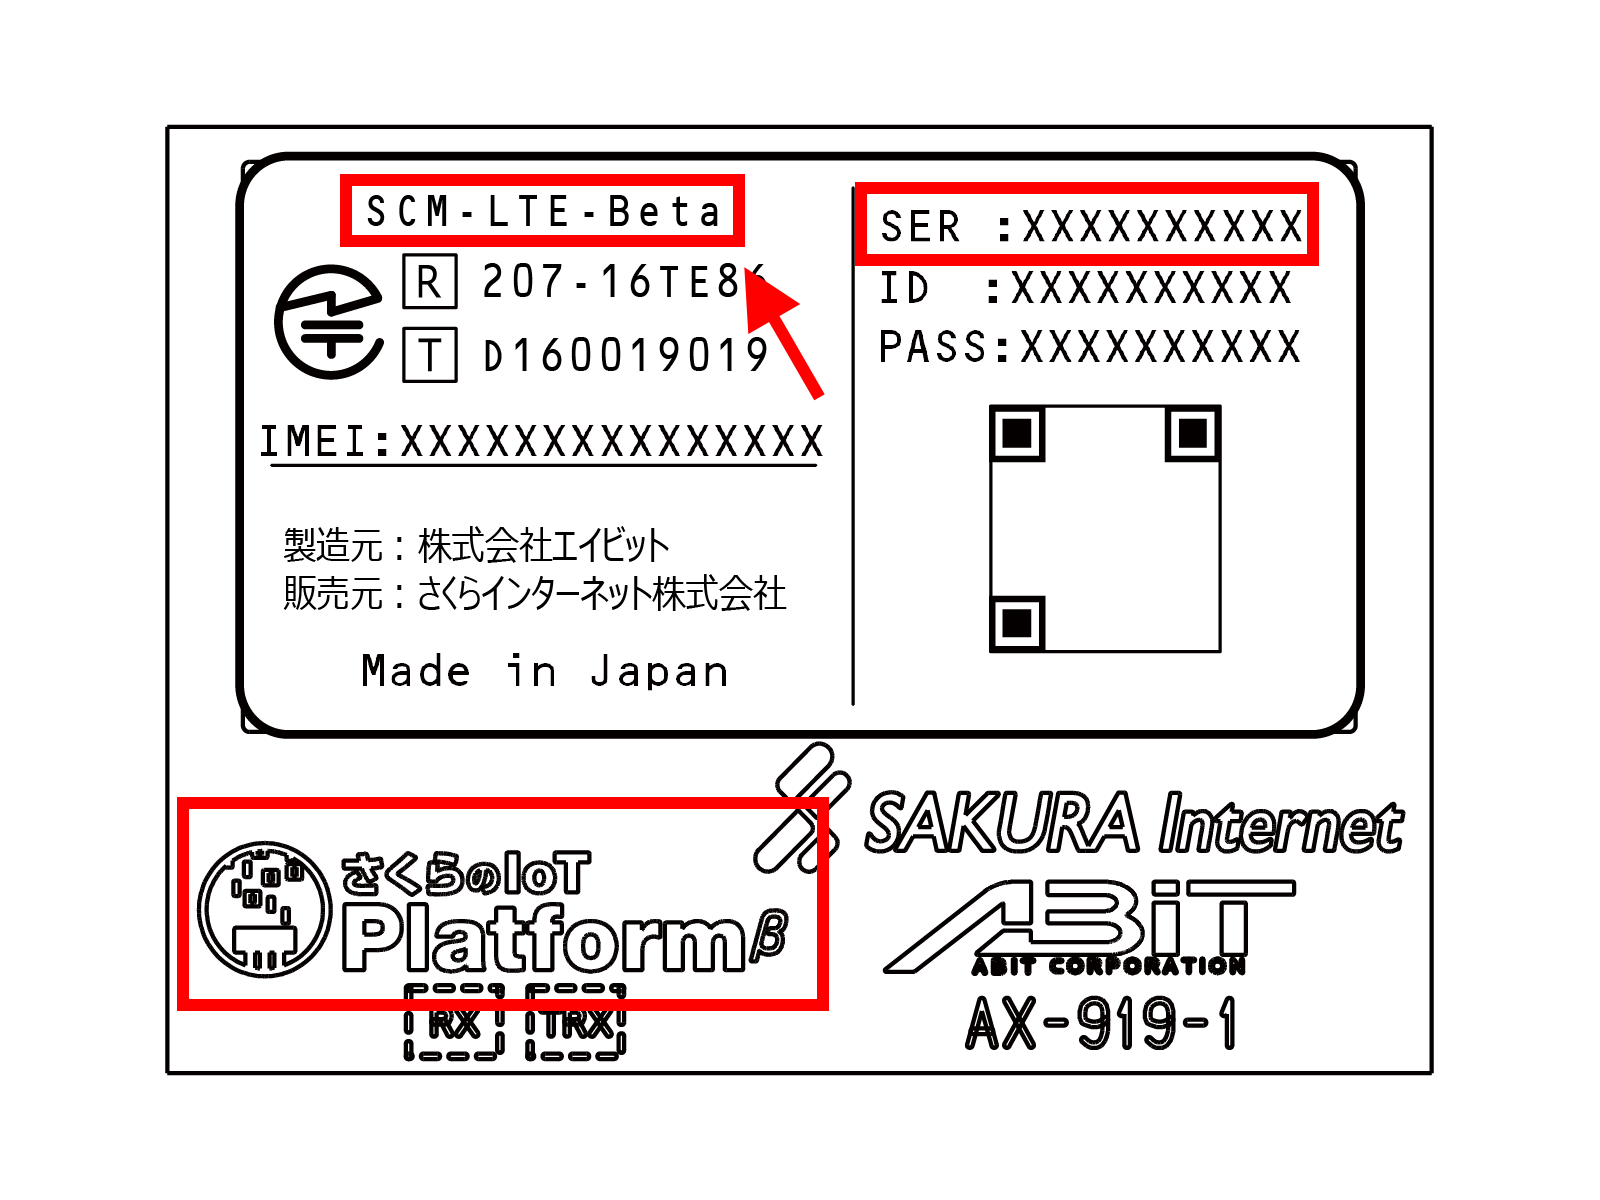 scm-lte-beta label